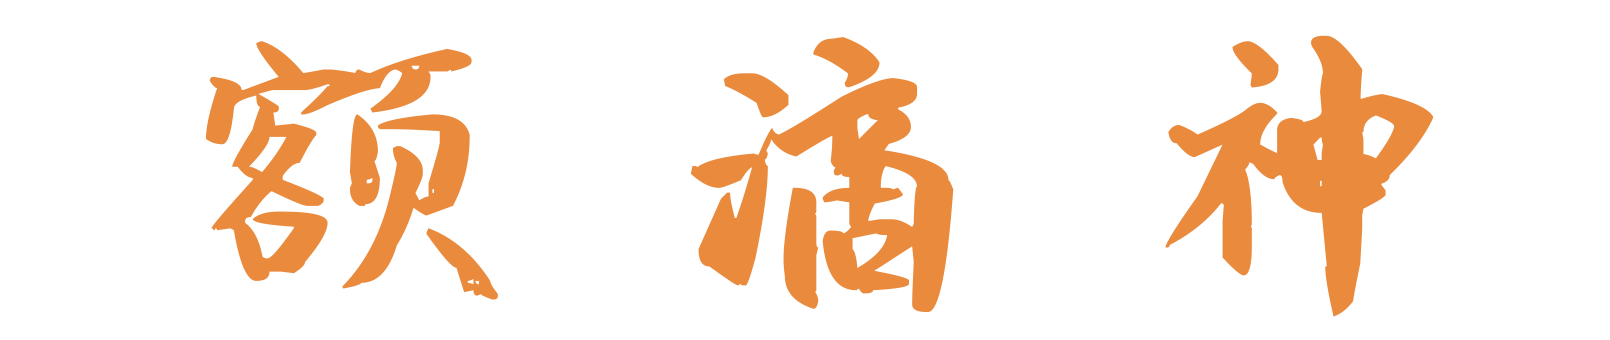 edishen_logo